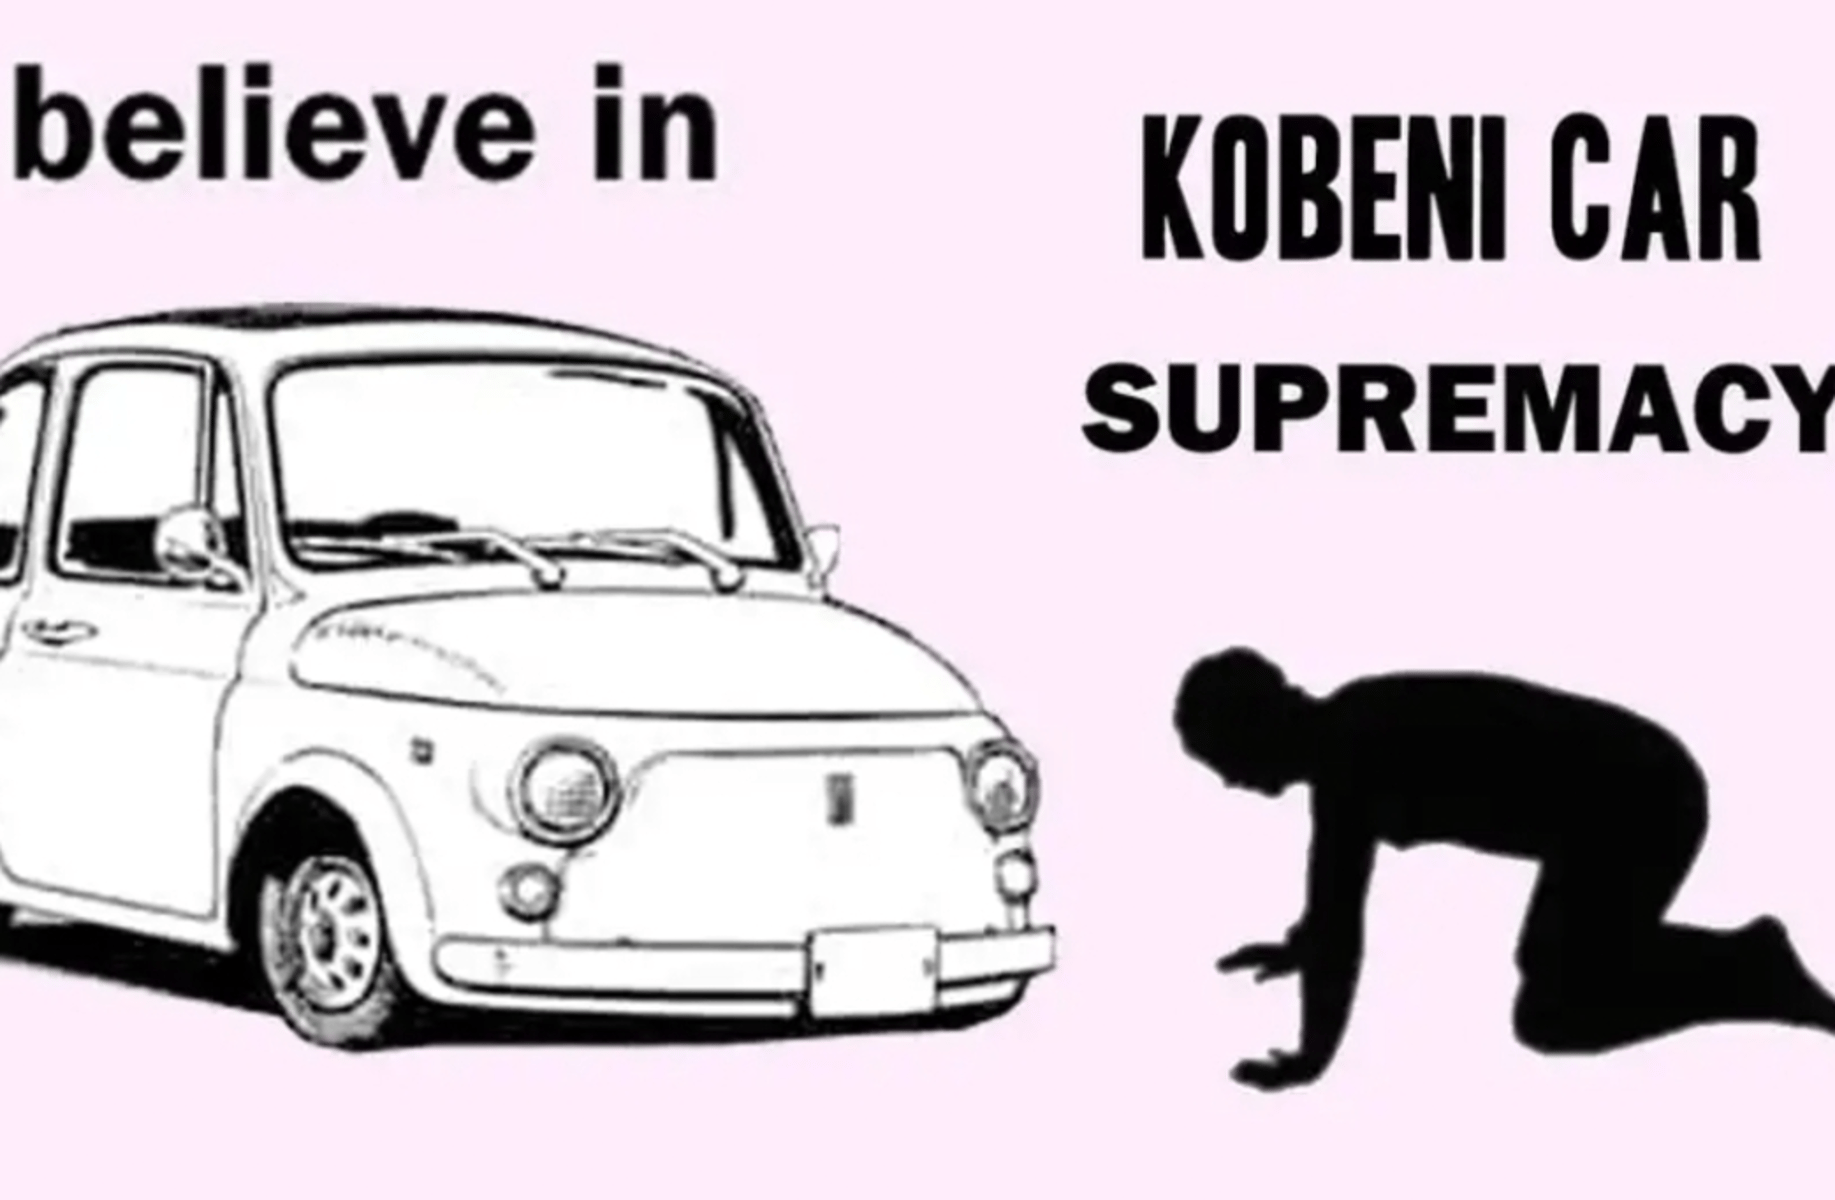 Kobeni's car